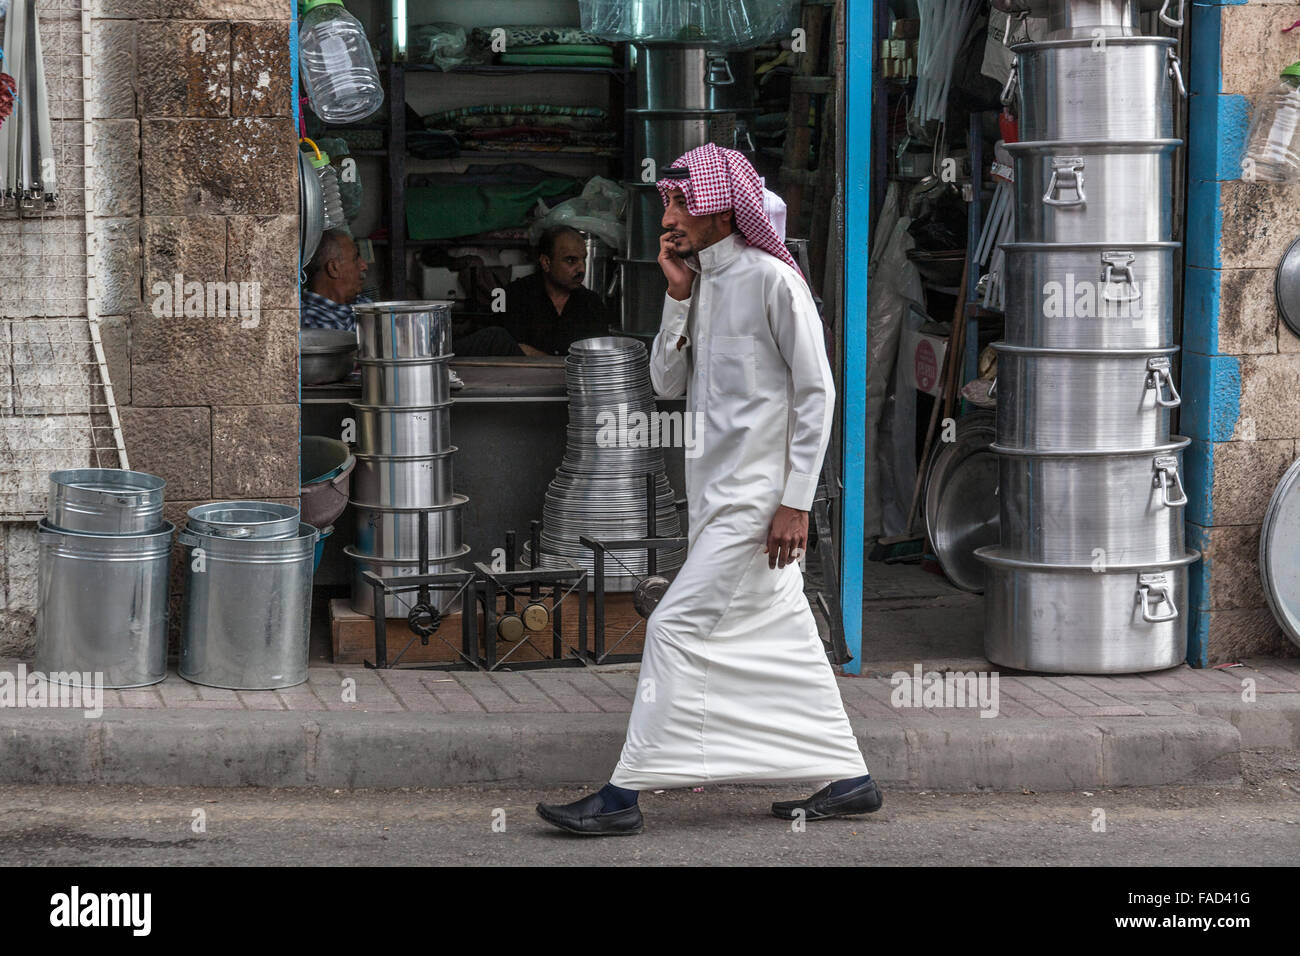 Street Scene, Madaba, Jordan Stock Photo